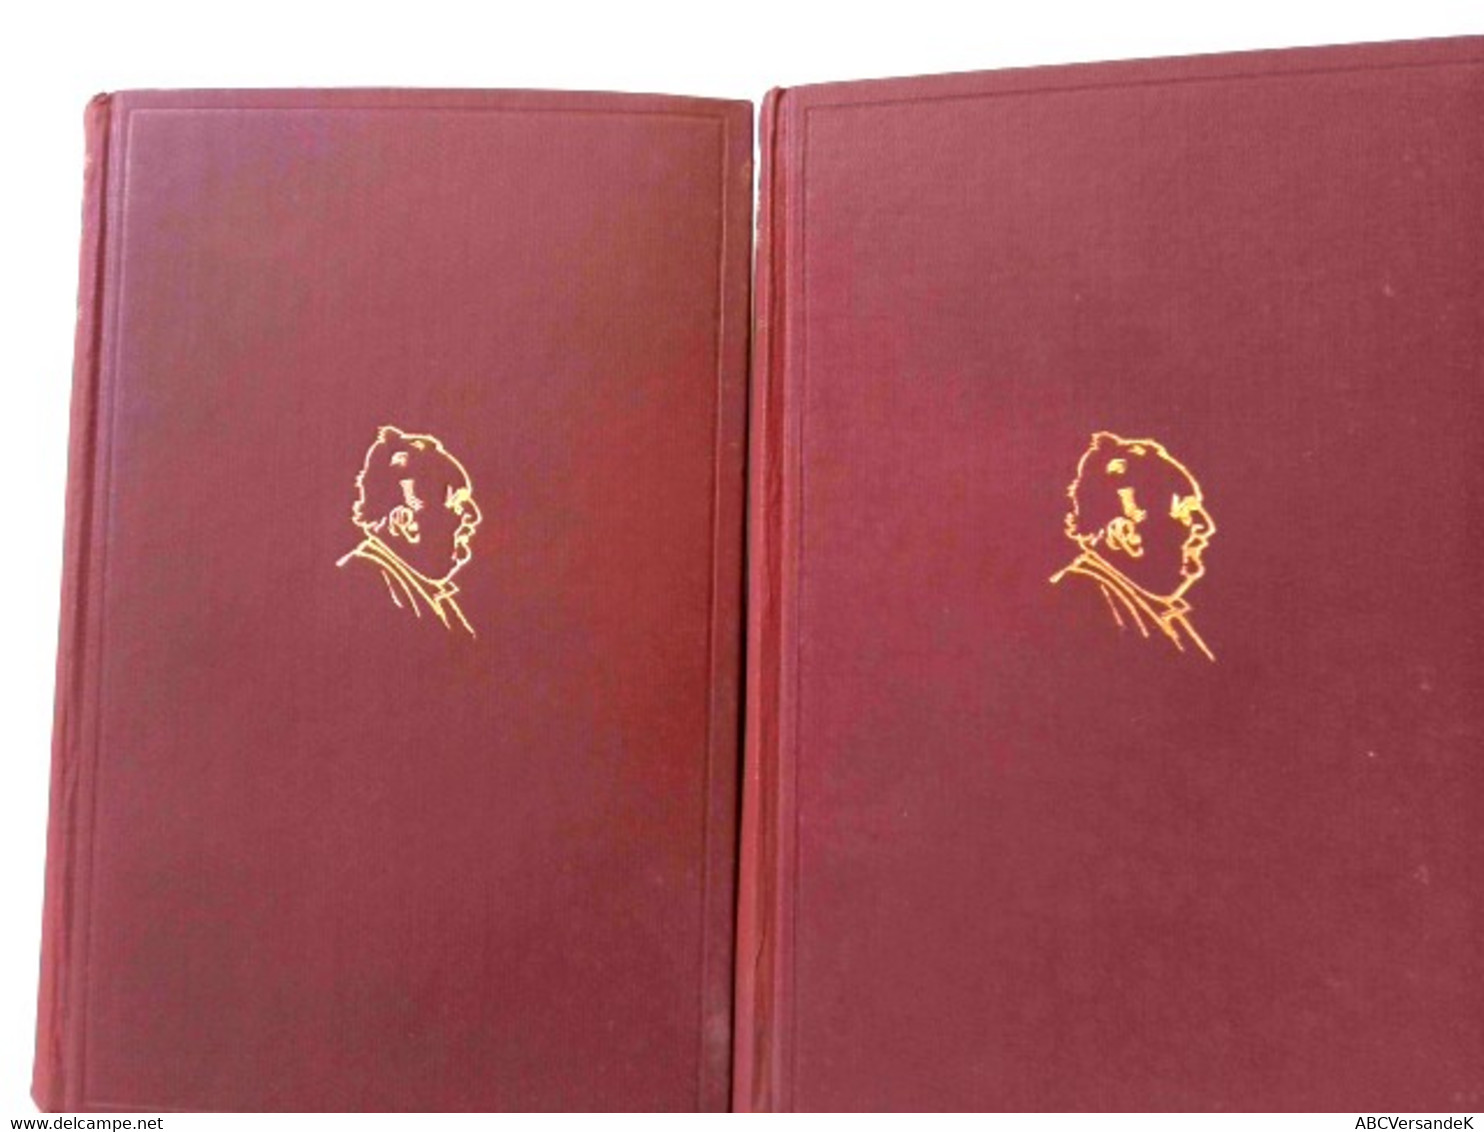 Konvolut Bestehend Aus 2 Bänden Zum Thema: C.F. Meyer Sämtliche Werke Gesamtausgabe - Duitse Auteurs